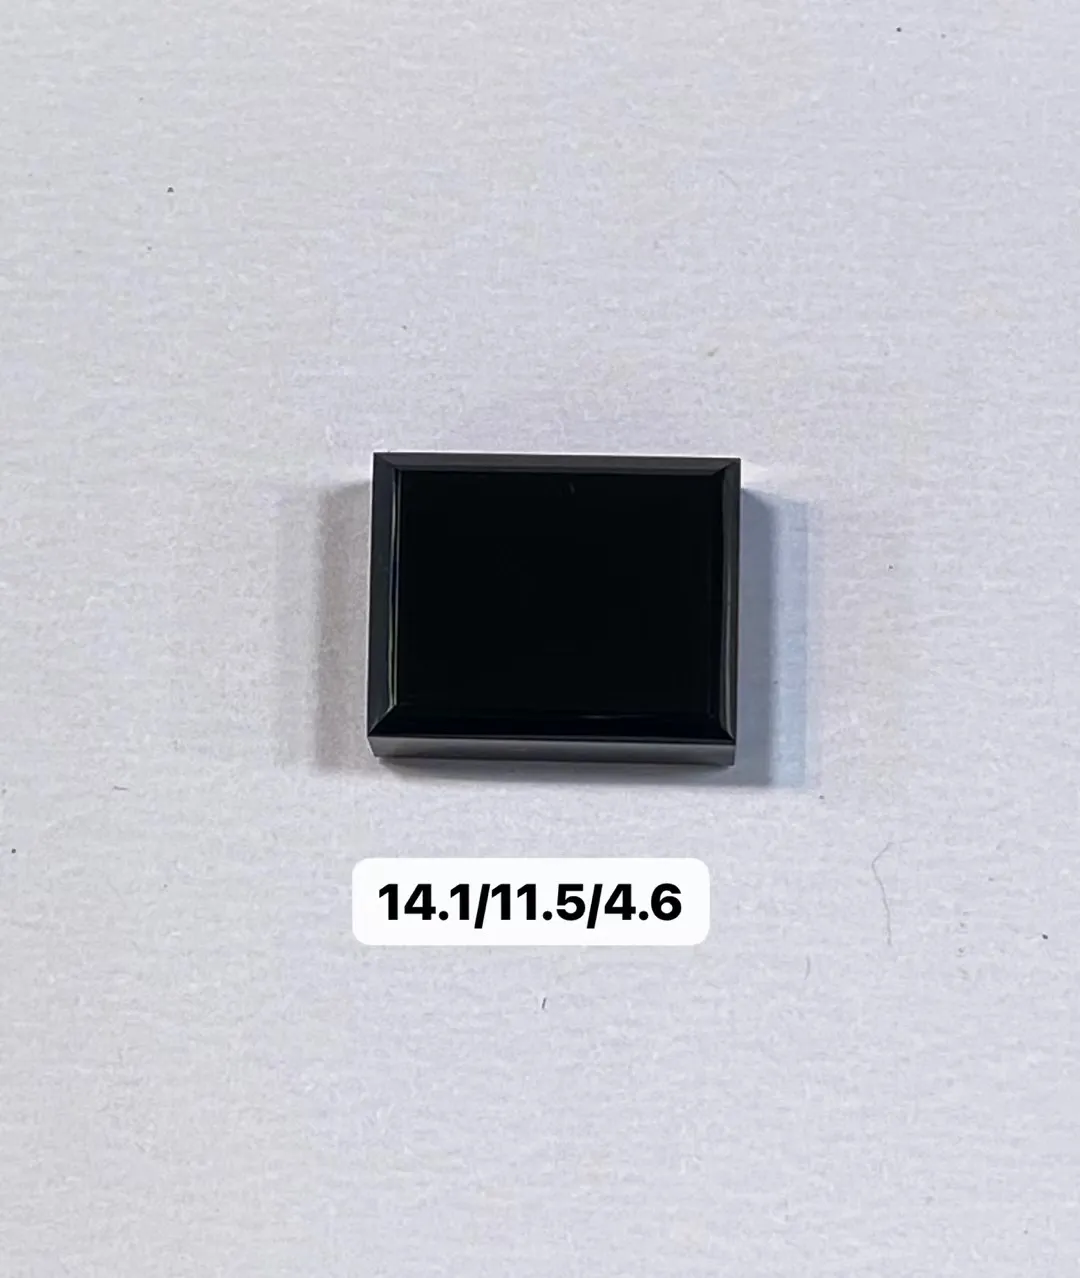 【墨翠方形】
黑度黑 灯打通透  品相饱满大气 尺寸14.1/11.5/4.6mm